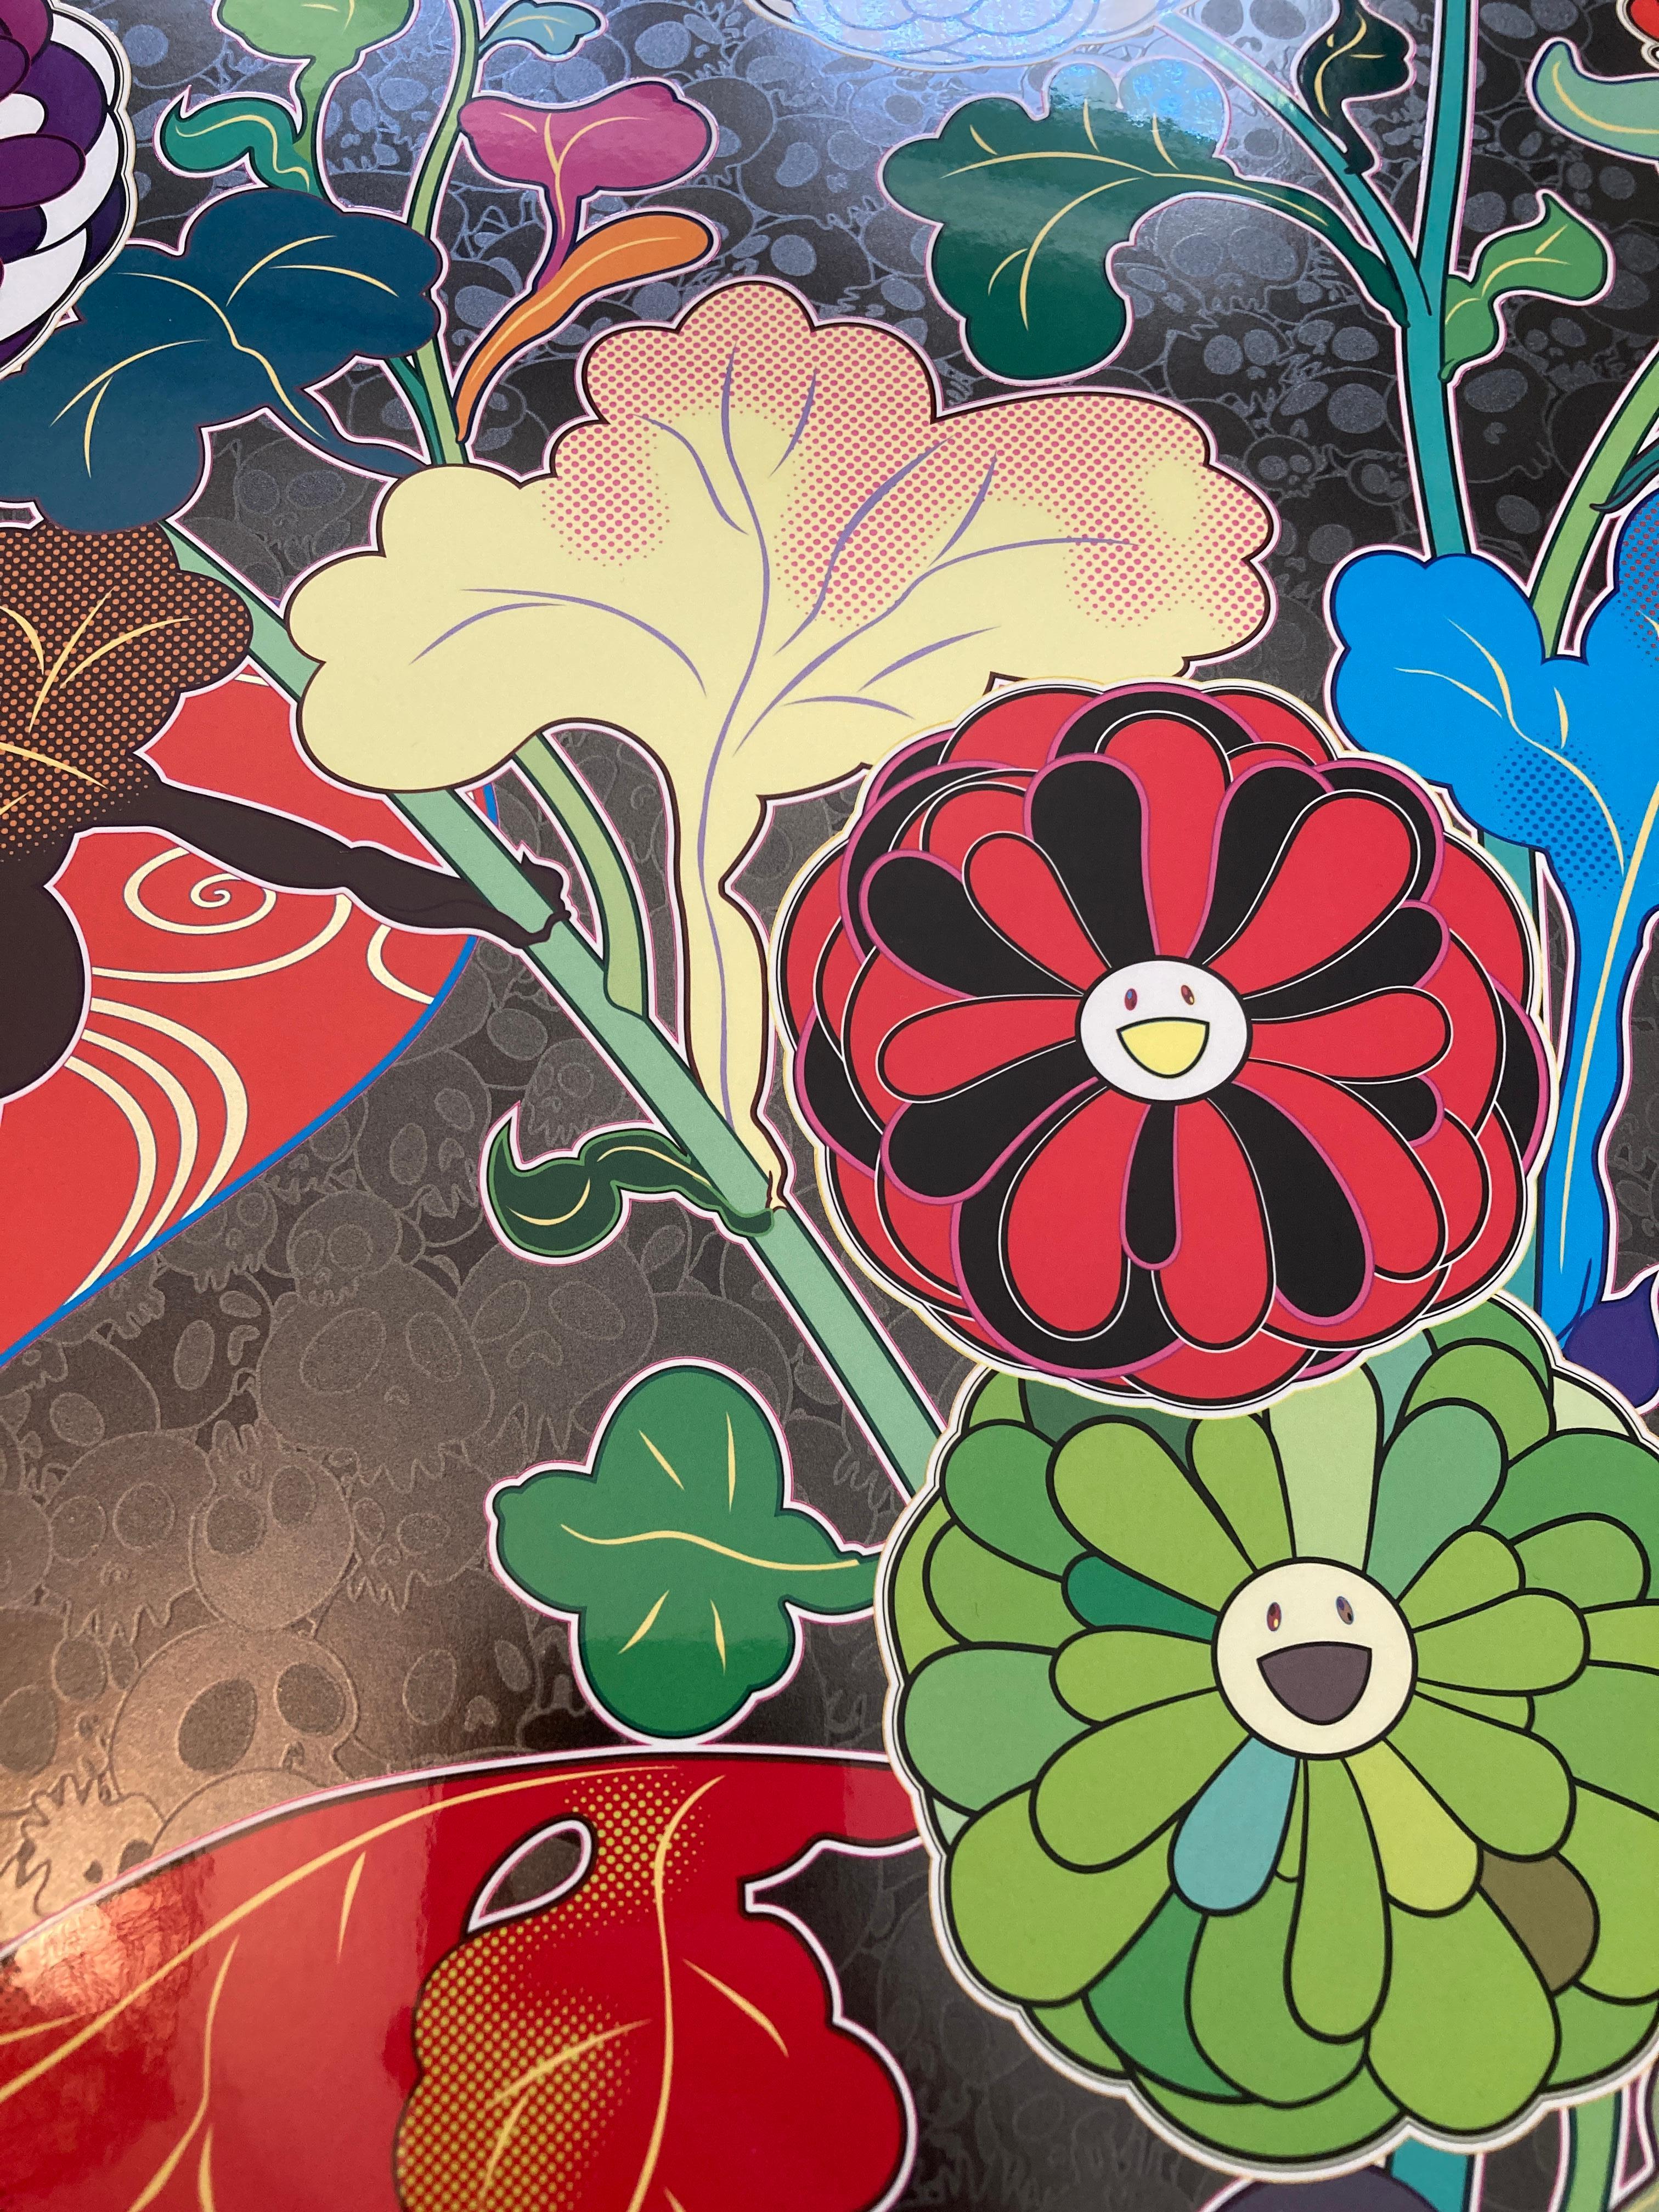 Takashi Murakami (geb. 1962)
Blühende Blumen auf der Insel der Toten, 2022
Offsetlithografie in Farben auf glattem Velinpapier
28 Zoll (71,1 cm) Durchmesser (Blatt)
Ed. 102/300
Signiert und nummeriert in Tinte unten rechts
Herausgegeben von Kaikai